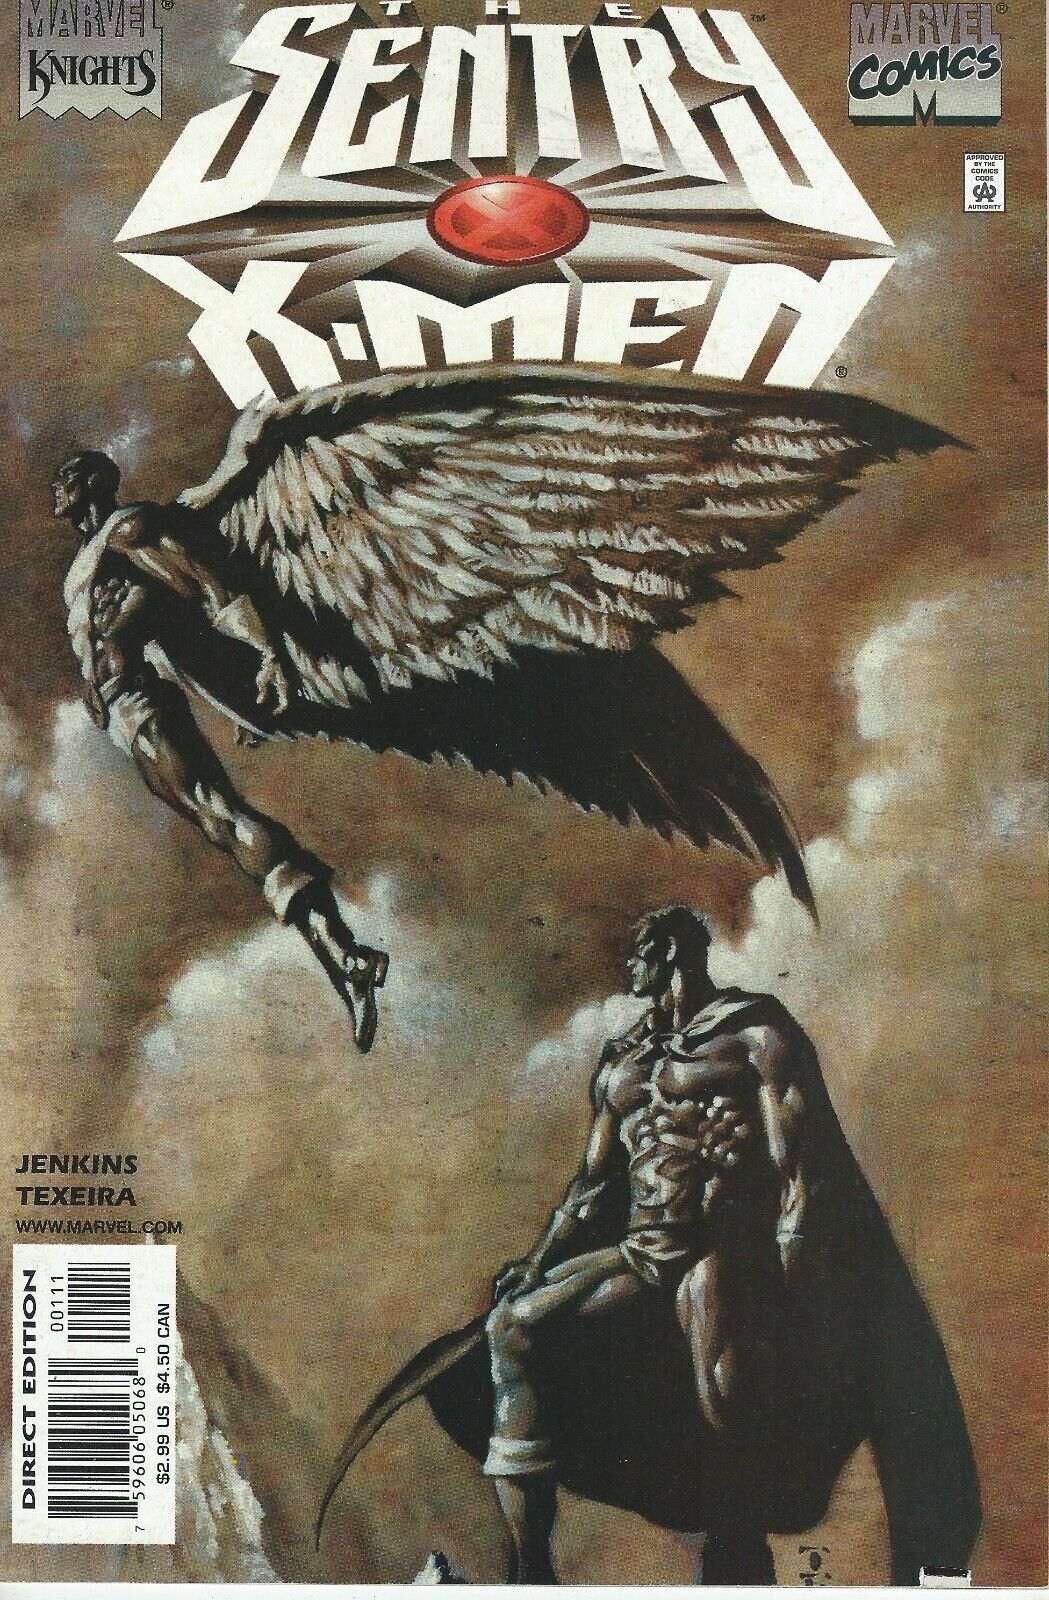 Marvel Comics Knights The Sentry X-Men Vol. 1 No. 1  February 2001